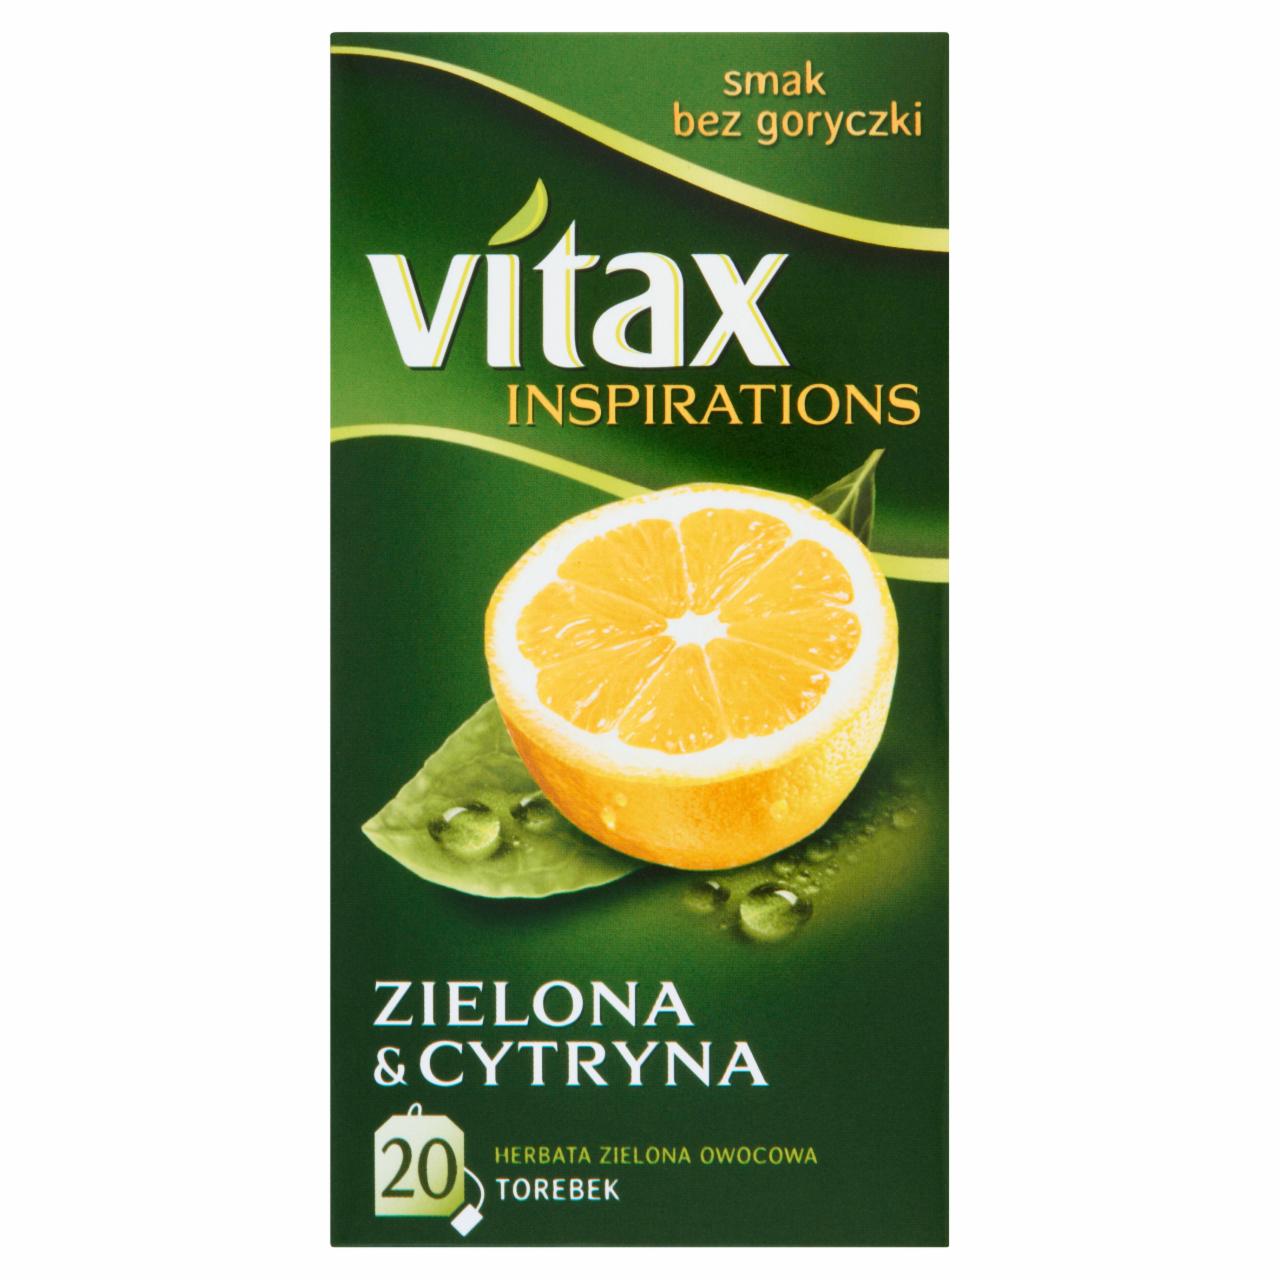 Zdjęcia - Vitax Inspirations Herbata zielona owocowa aromatyzowana 30 g (20 x 1,5 g)